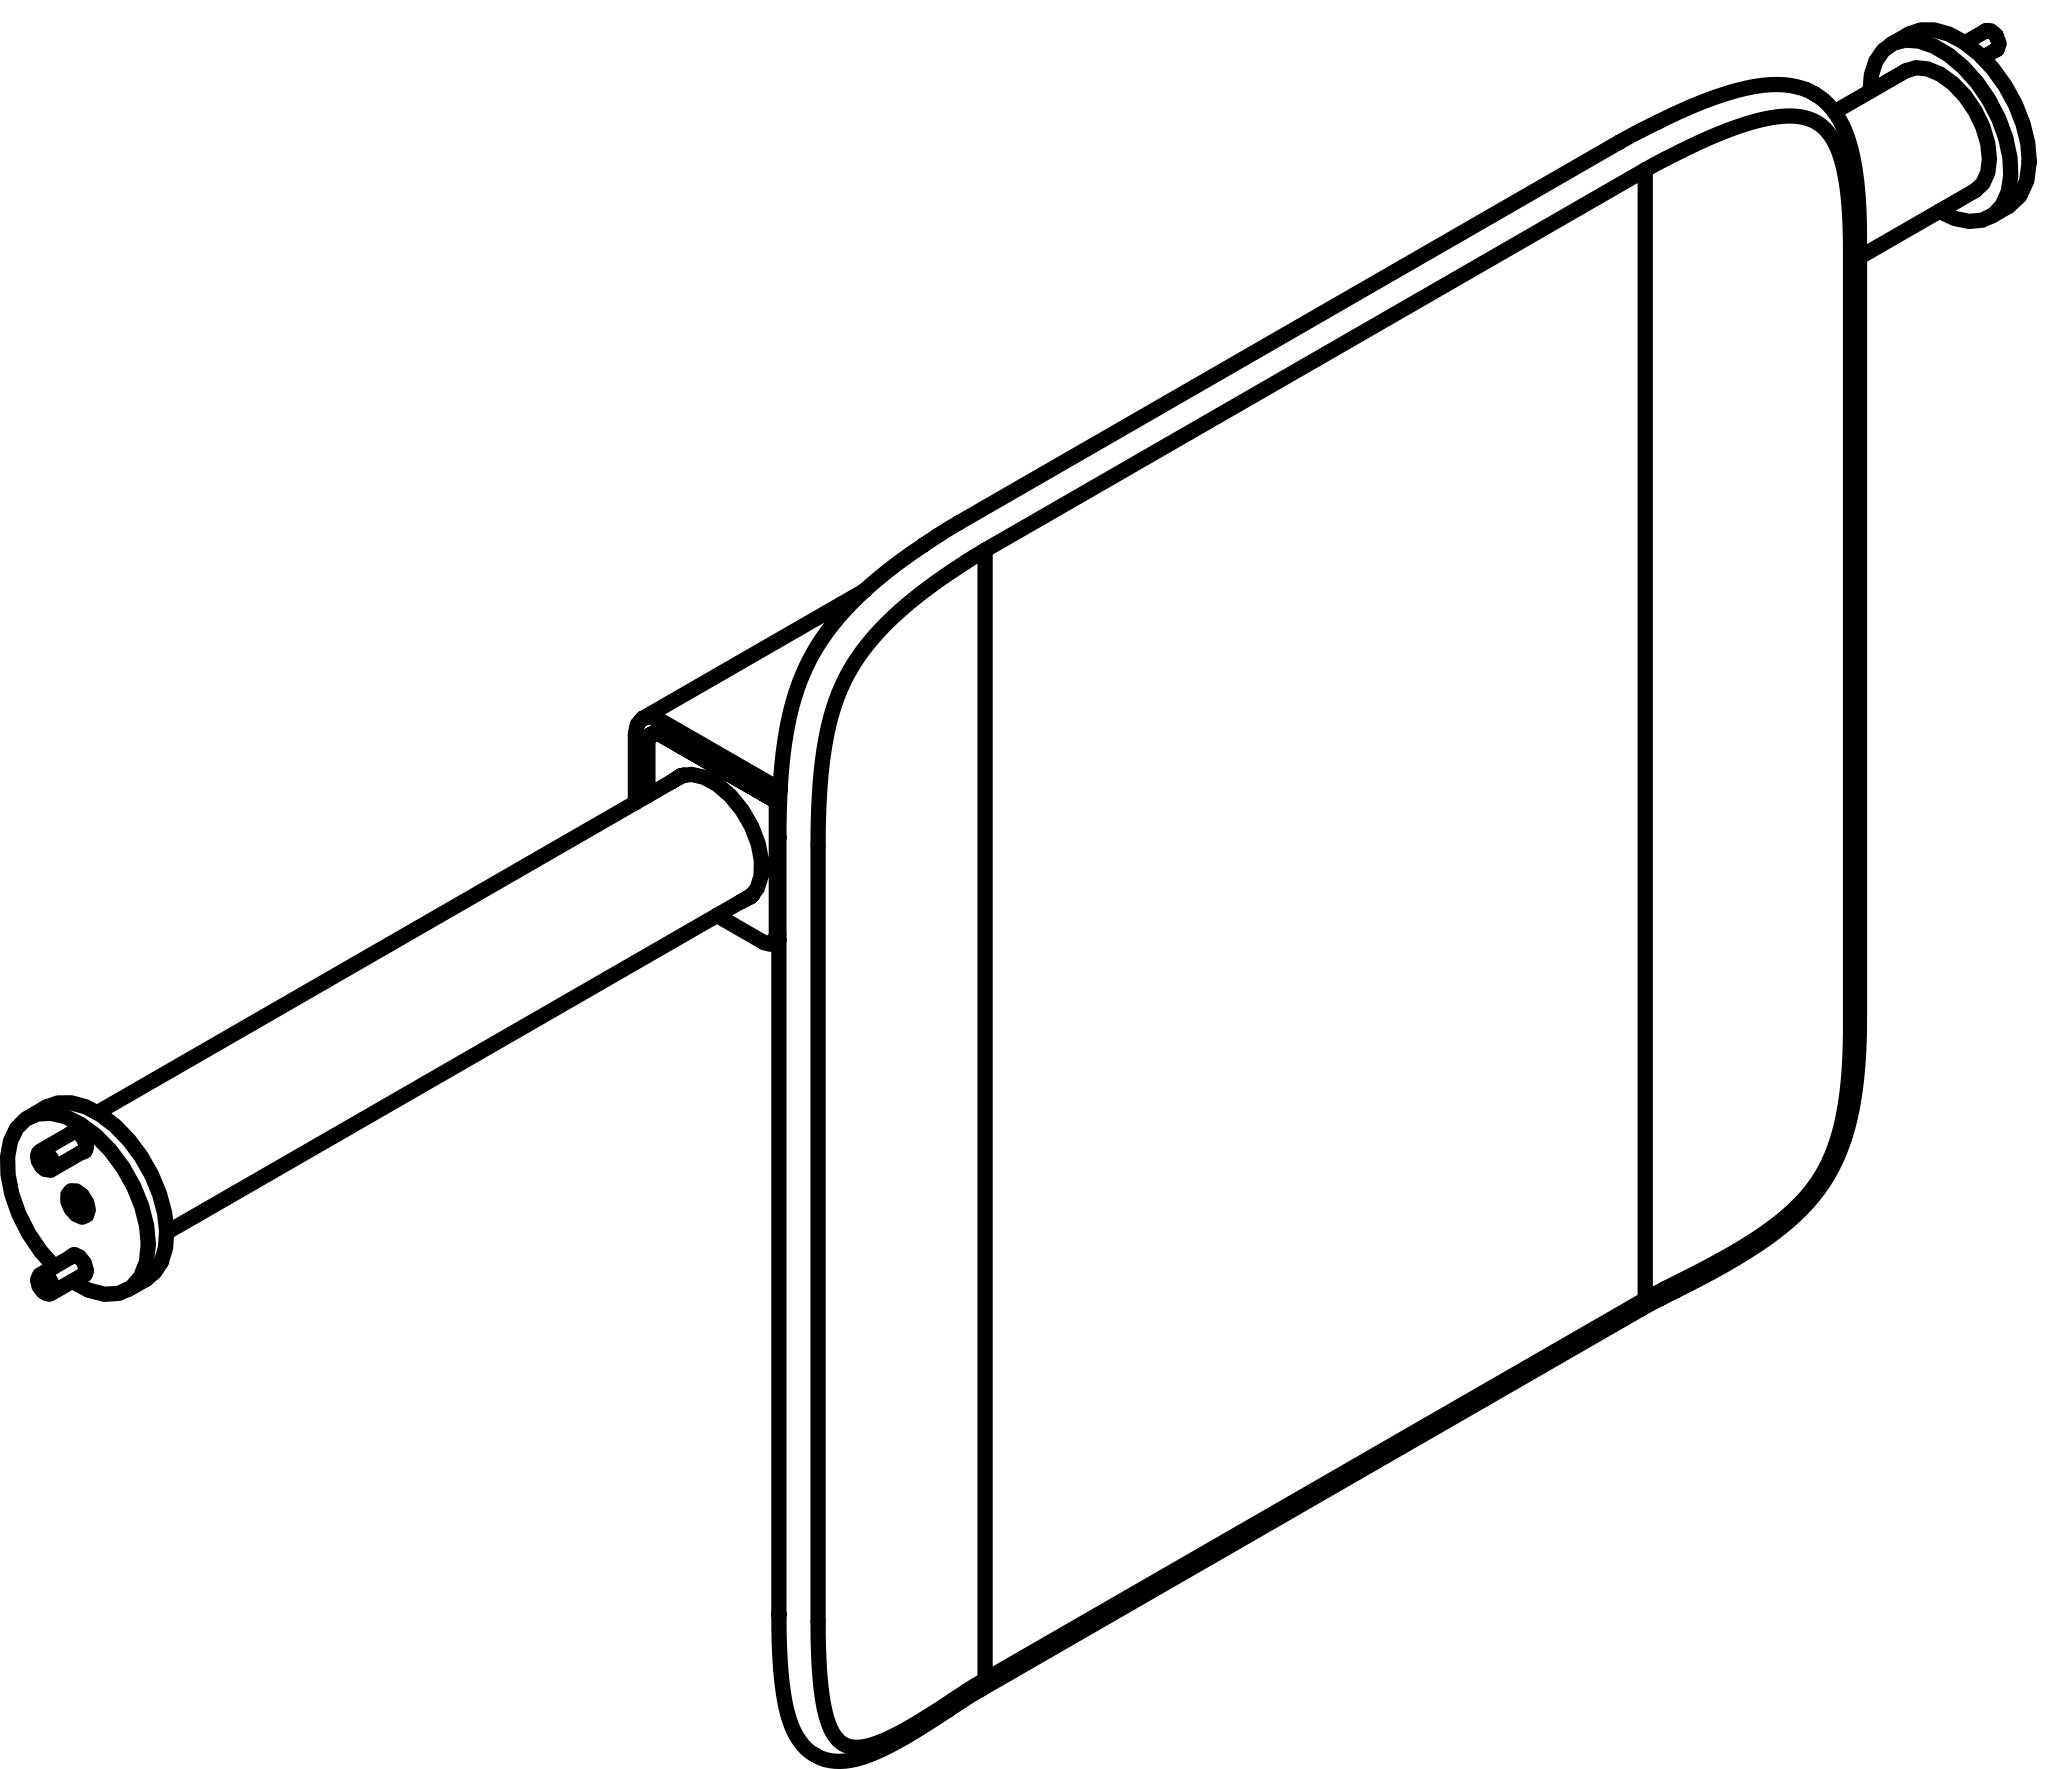 HEWI Rückenstütze „System 900“ 12,8 cm in Anthrazitgrau